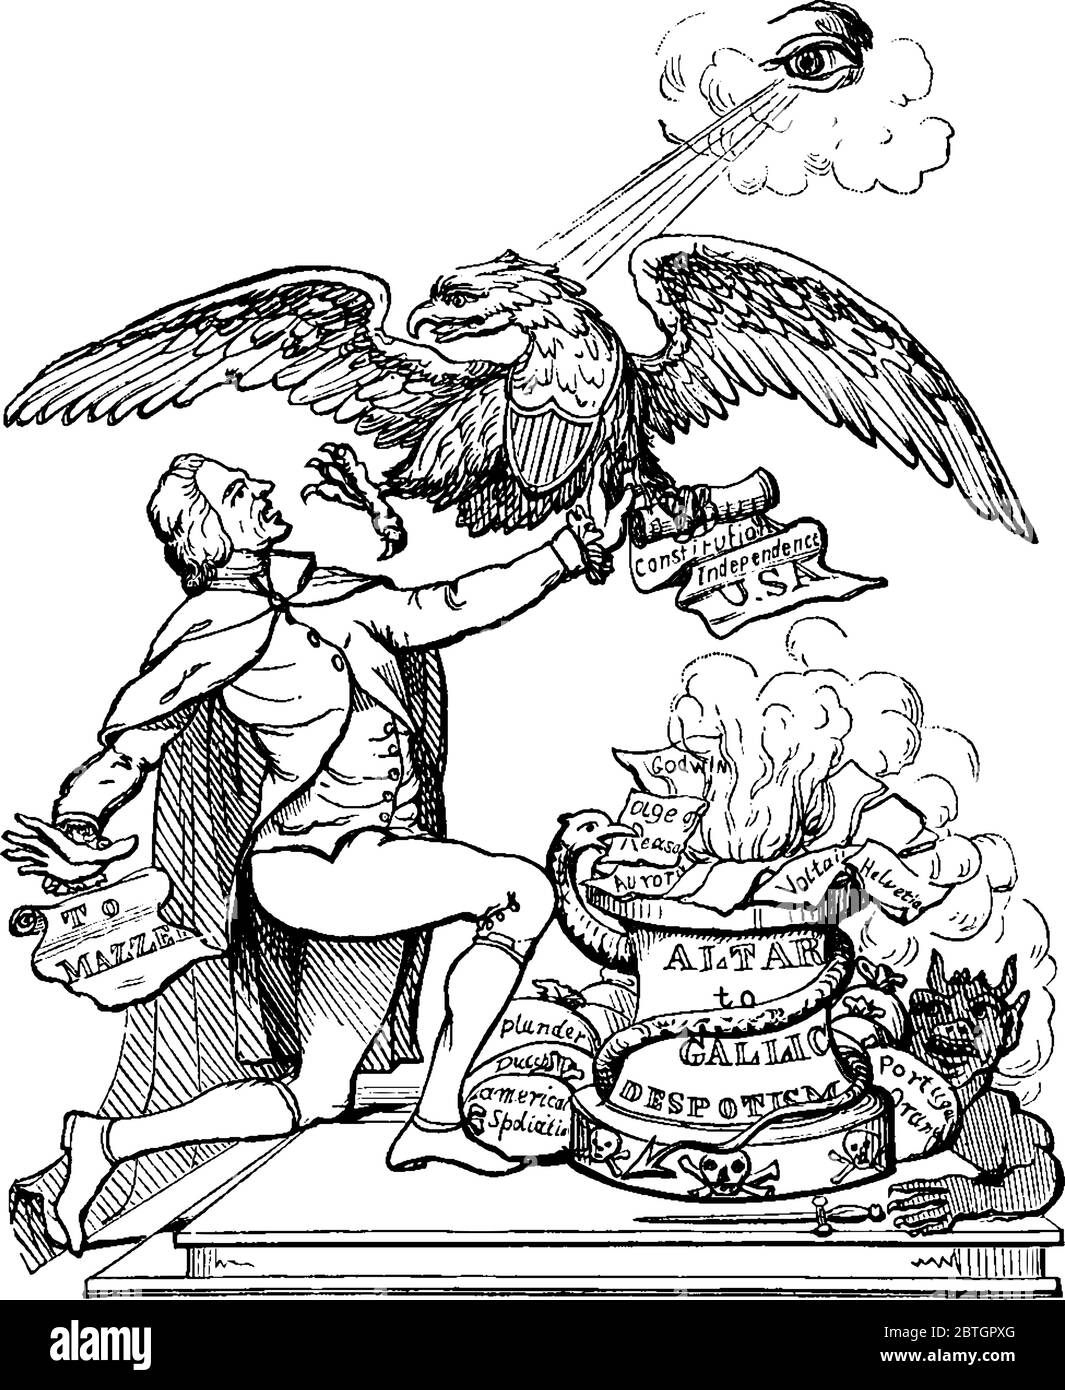 Thomas Jefferson, épegue à un autel et un aigle essayant de l'empêcher de démolir la Constitution, de dessin de ligne vintage ou de gravure illustrae Illustration de Vecteur